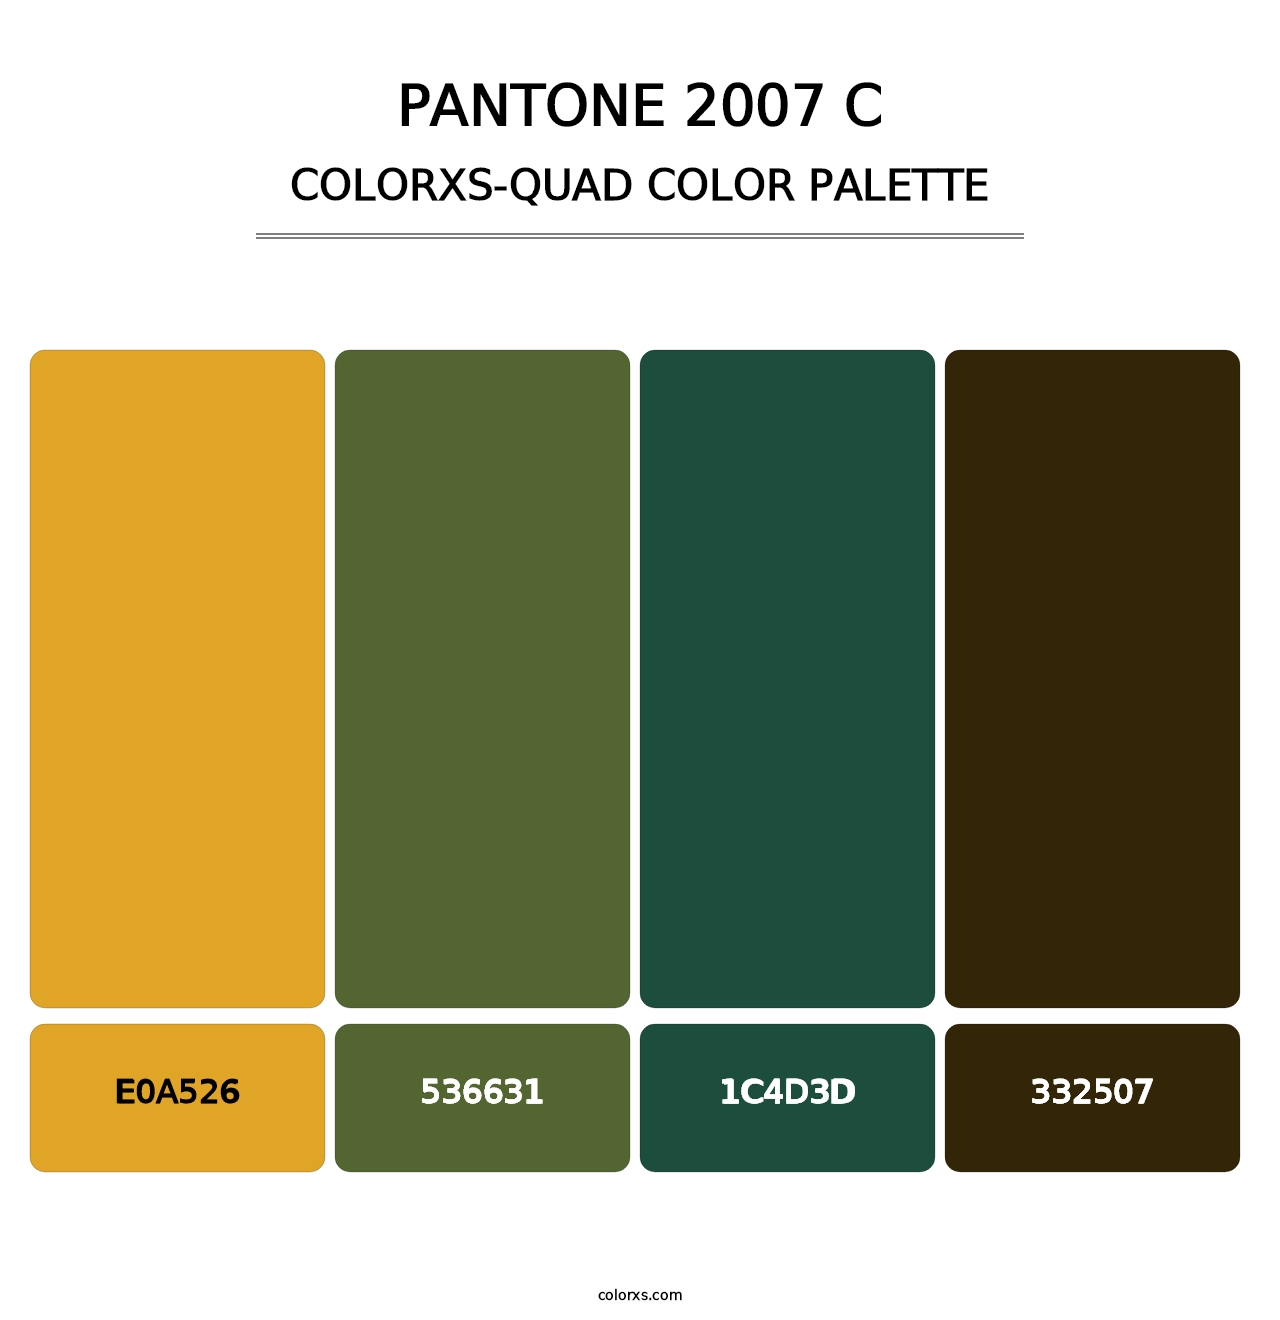 PANTONE 2007 C - Colorxs Quad Palette